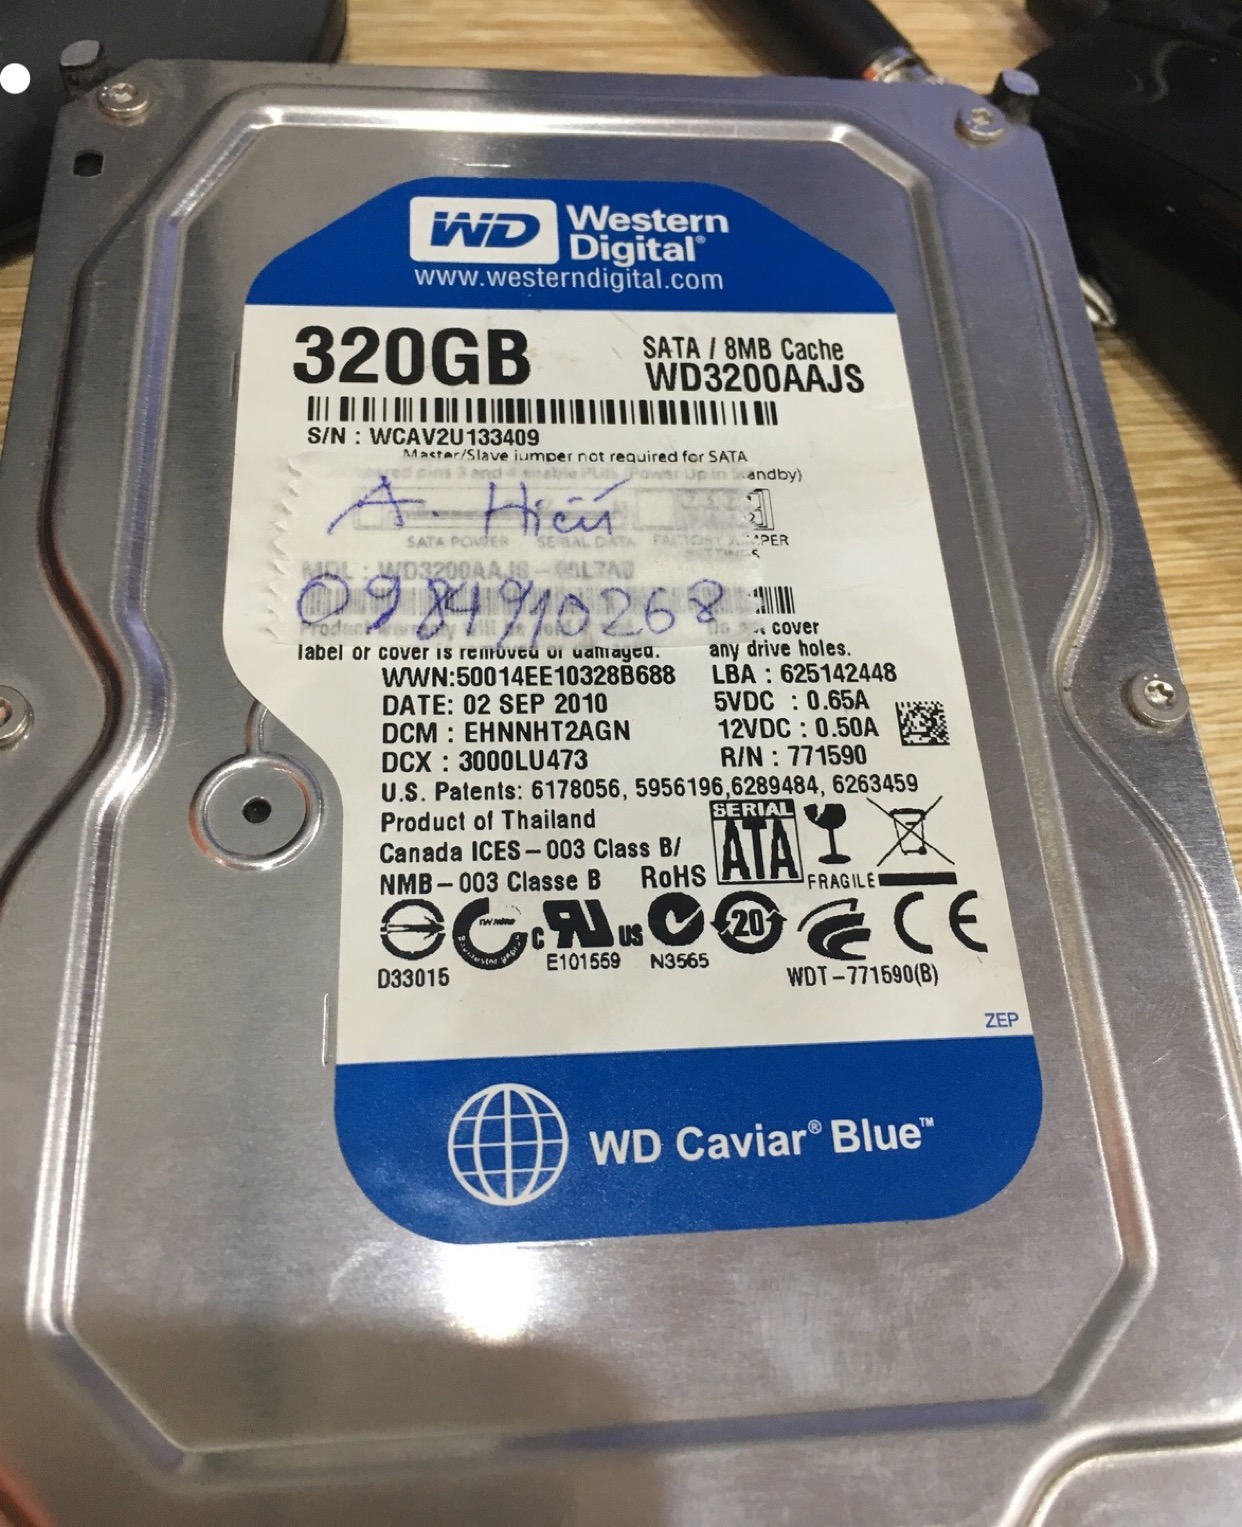 Khôi phục dữ liệu ổ cứng Western 320GB bad 28/04/2020 - cuumaytinh